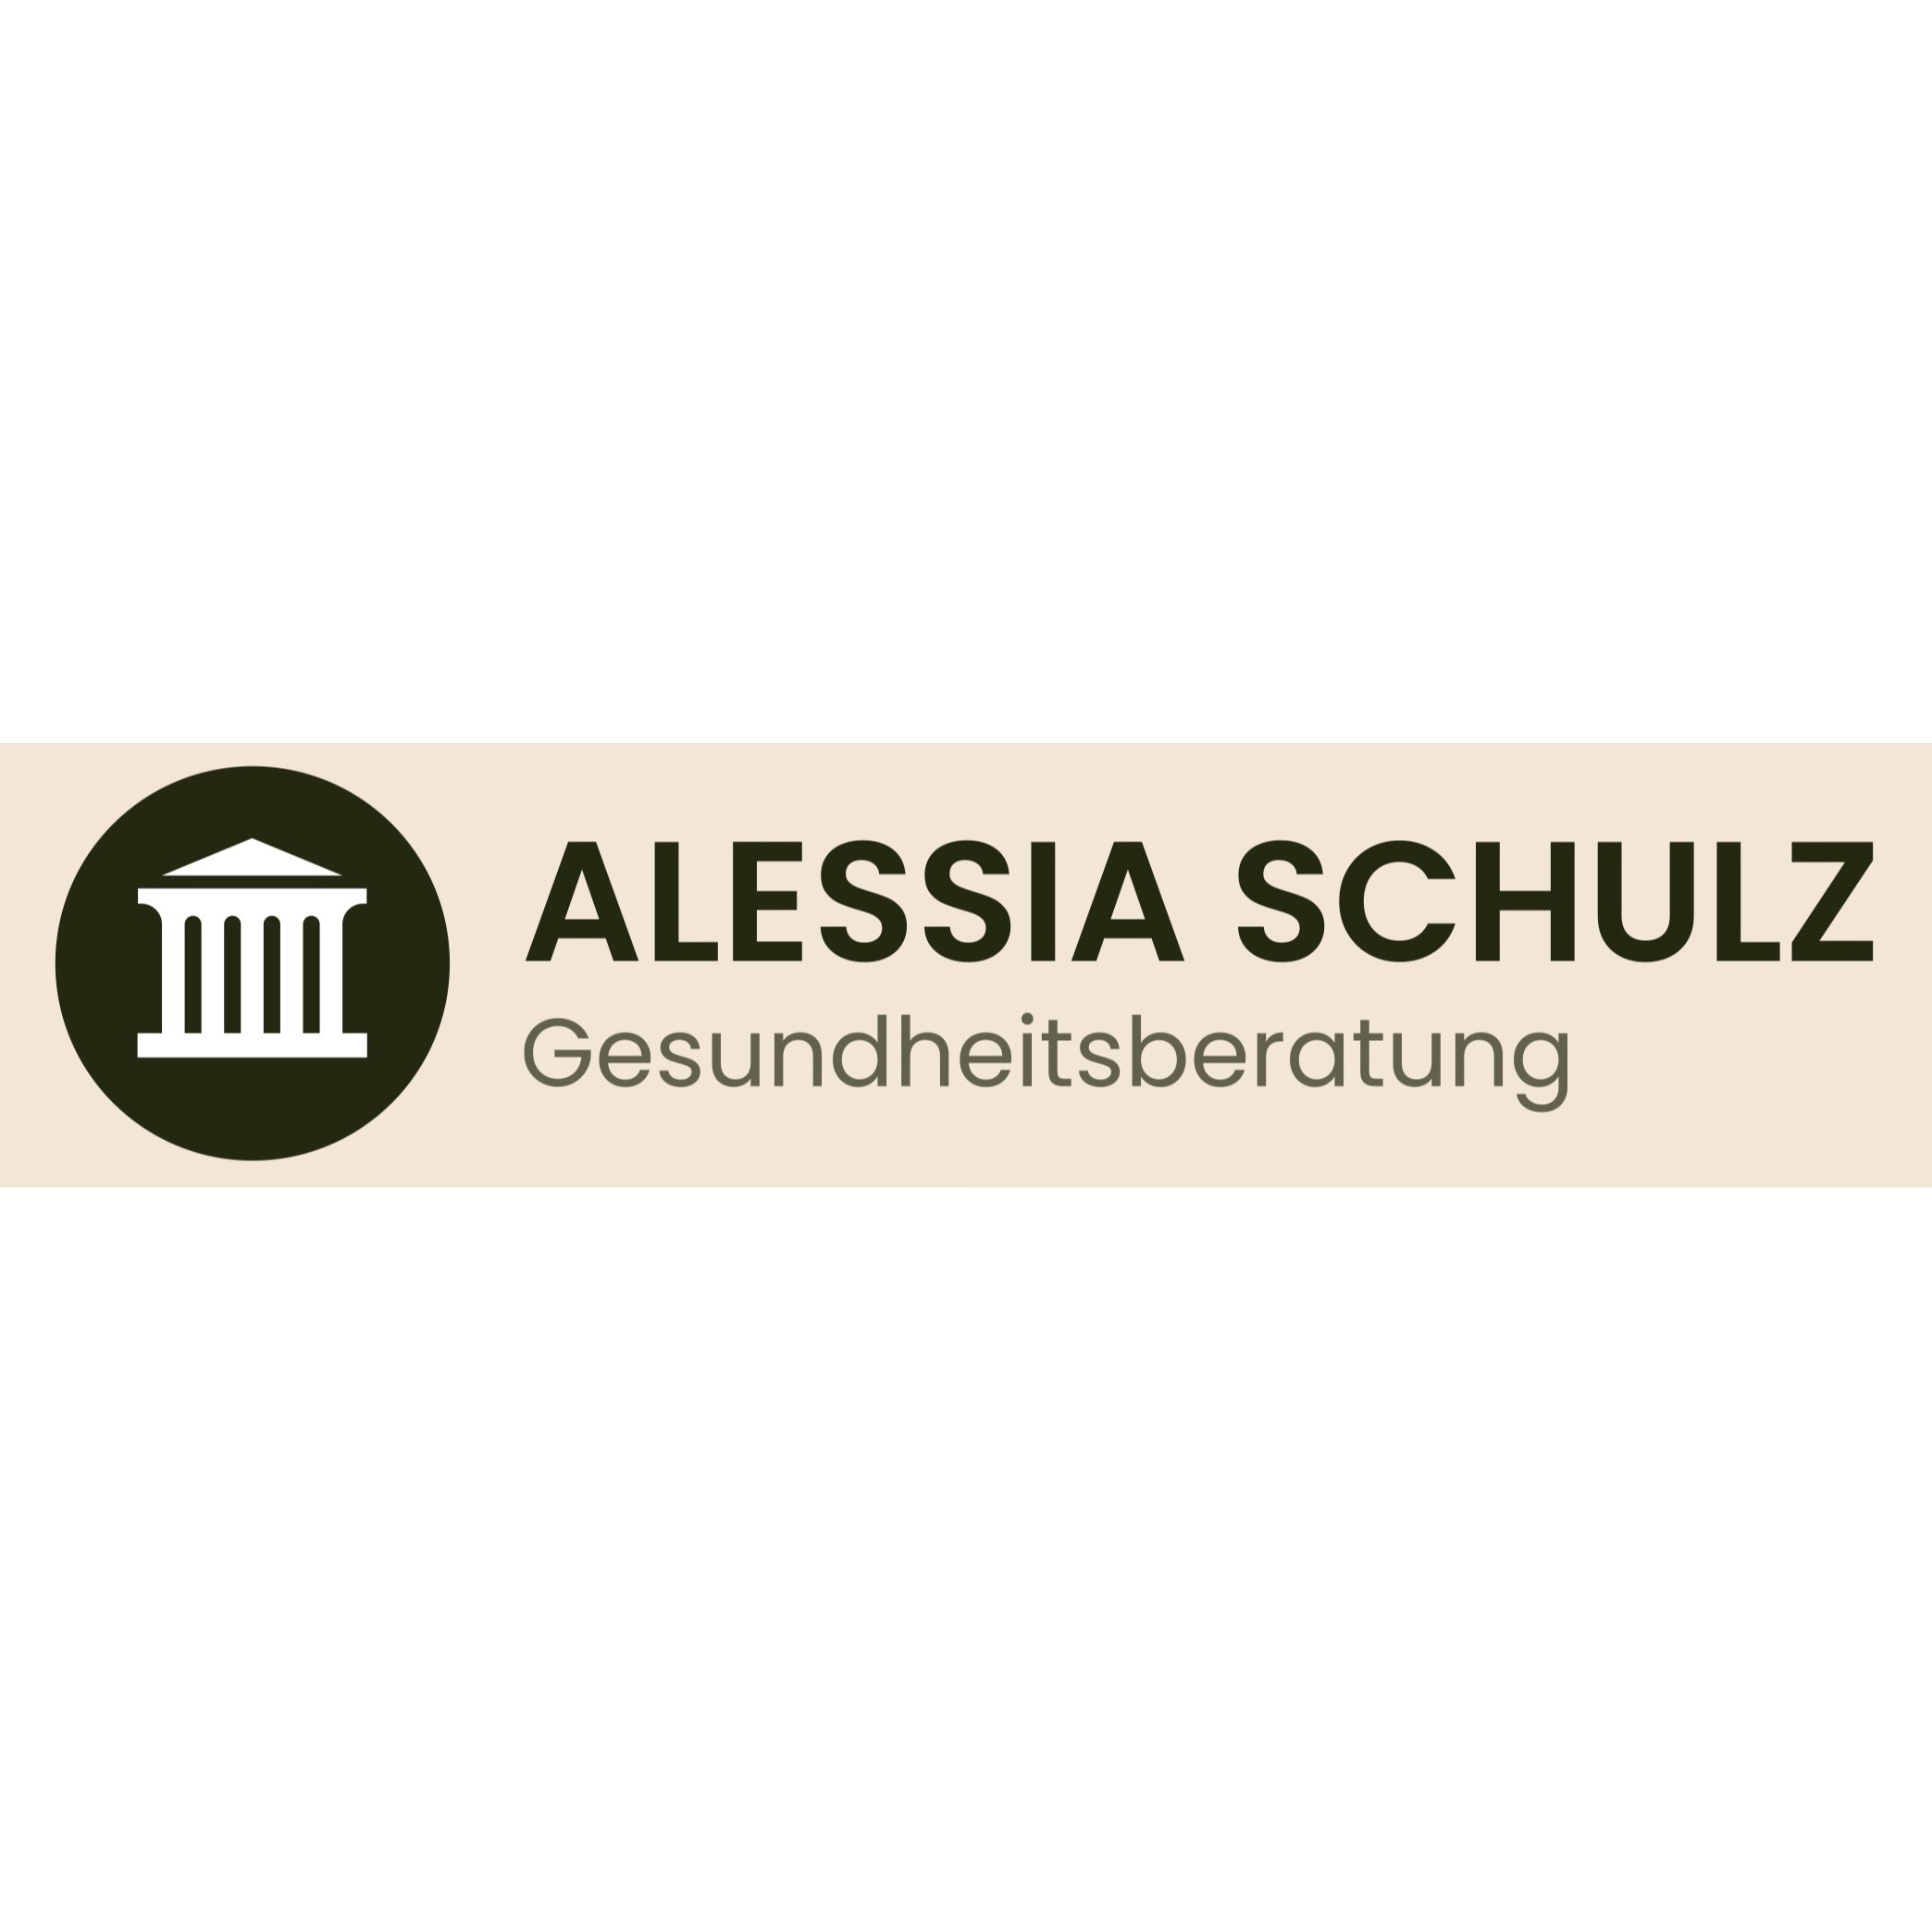 Alessia Schulz  